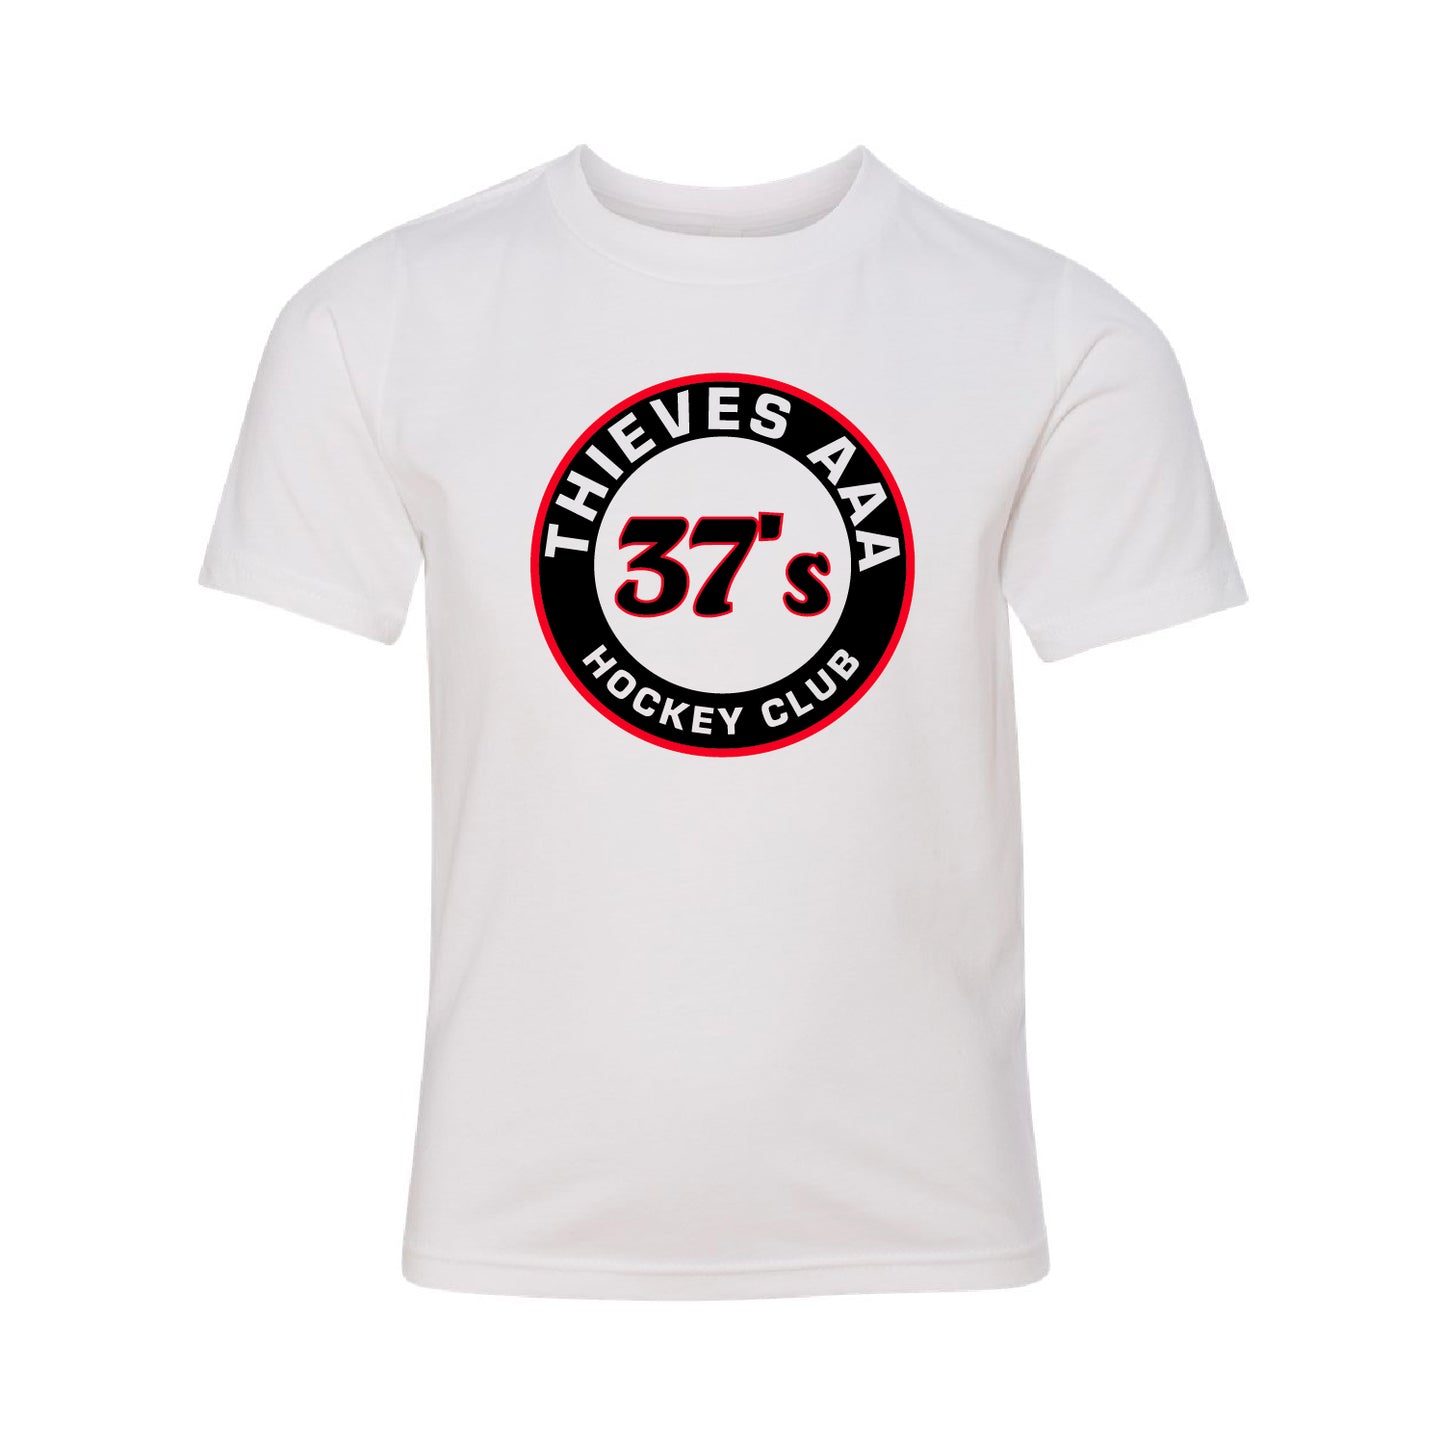 Thieves AAA Hockey Youth CVC T-Shirt 37's Circle